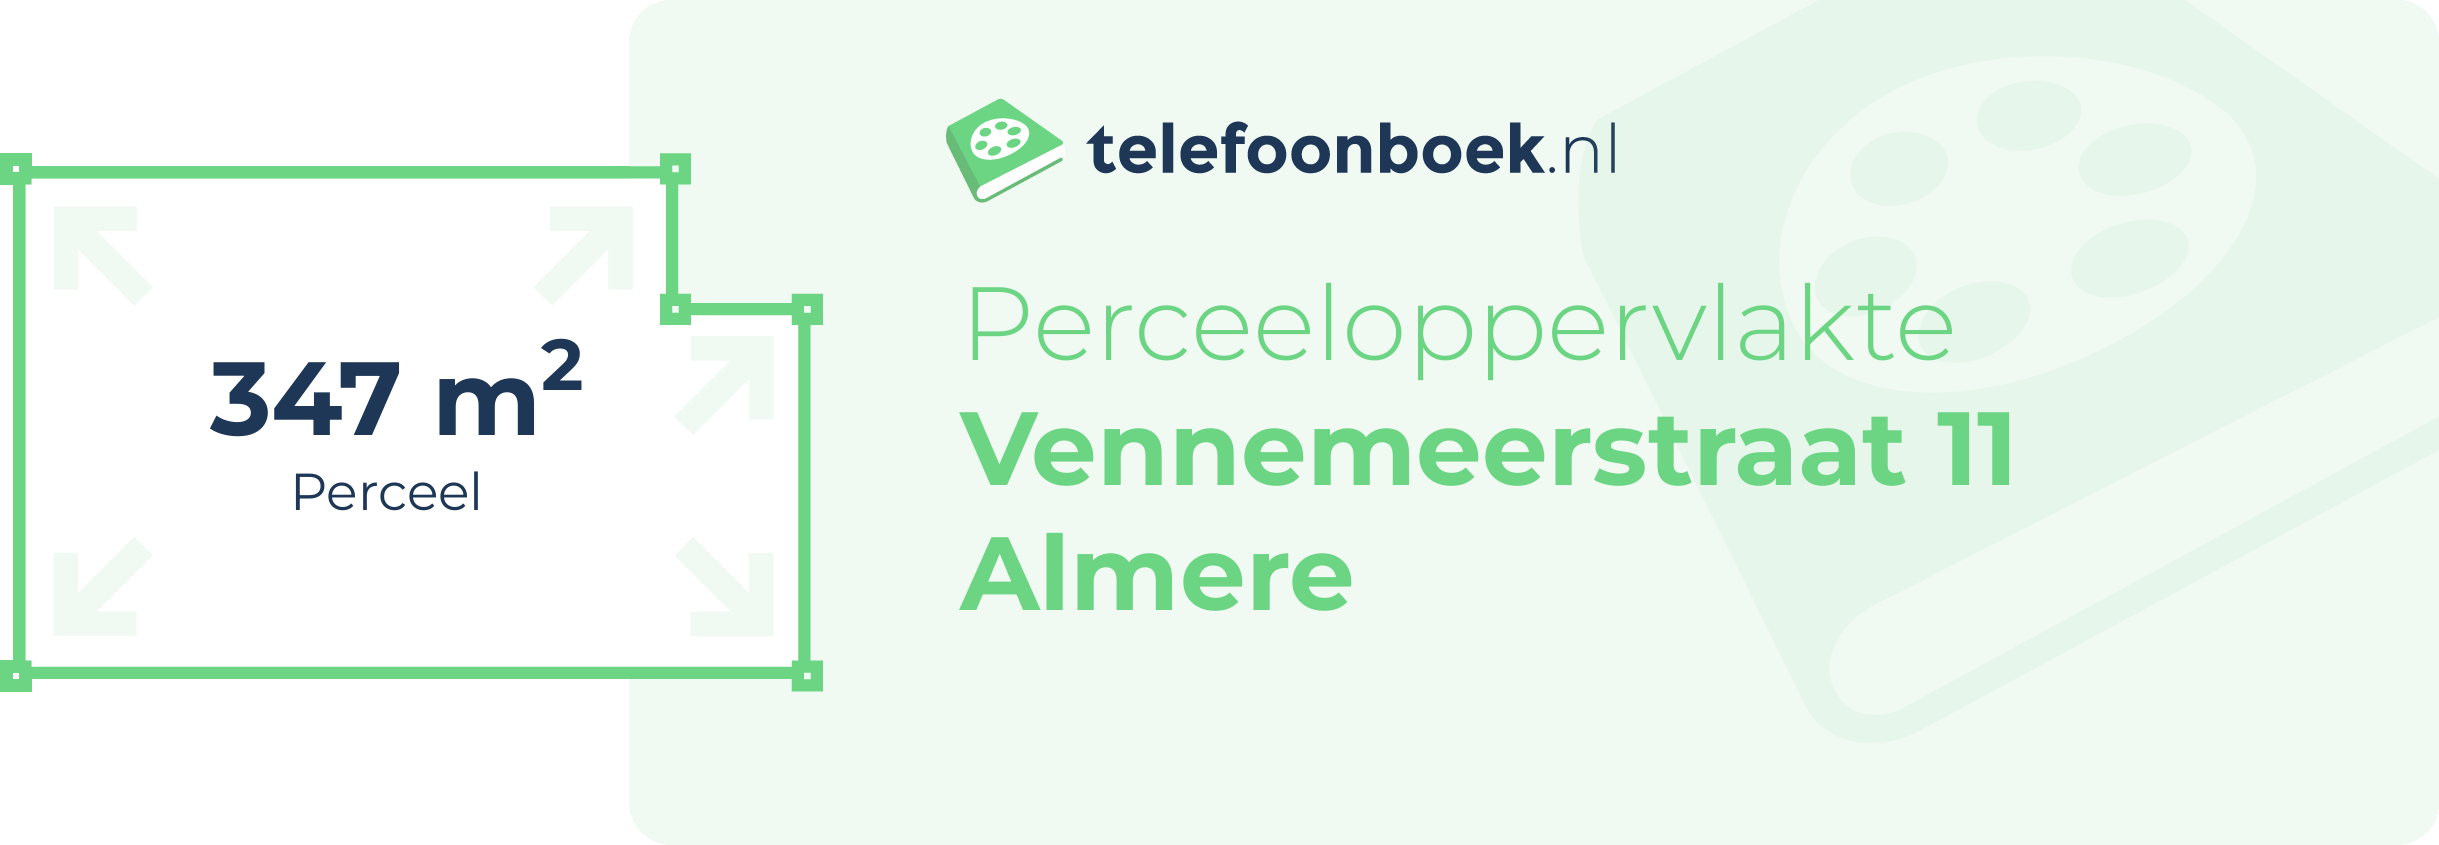 Perceeloppervlakte Vennemeerstraat 11 Almere